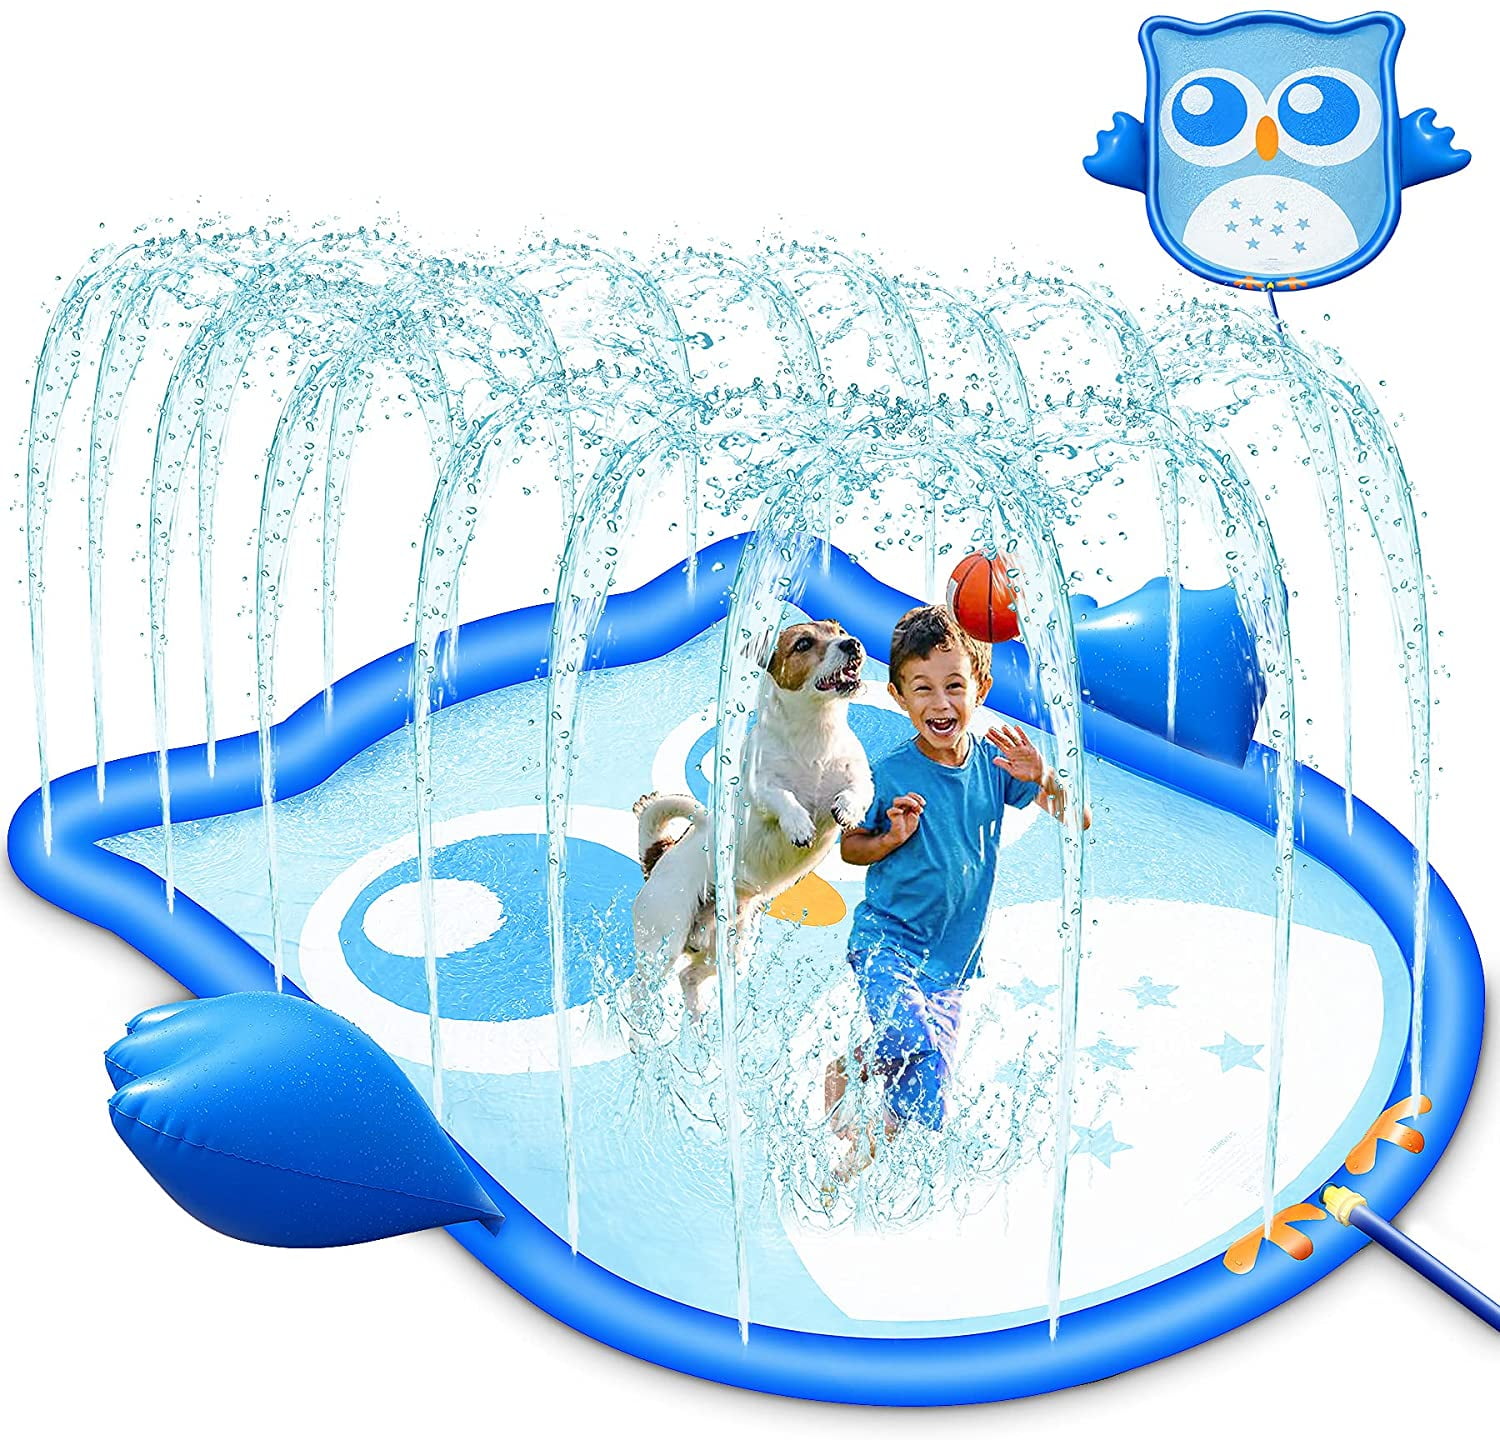 68 Backyard Outdoor Wading Pool Water Mat for Girls,Boys,Dog VIVID TREE Sprinkler Large Splash Pad Outdoor Inflatable Sprinkler for Wading and Learning 